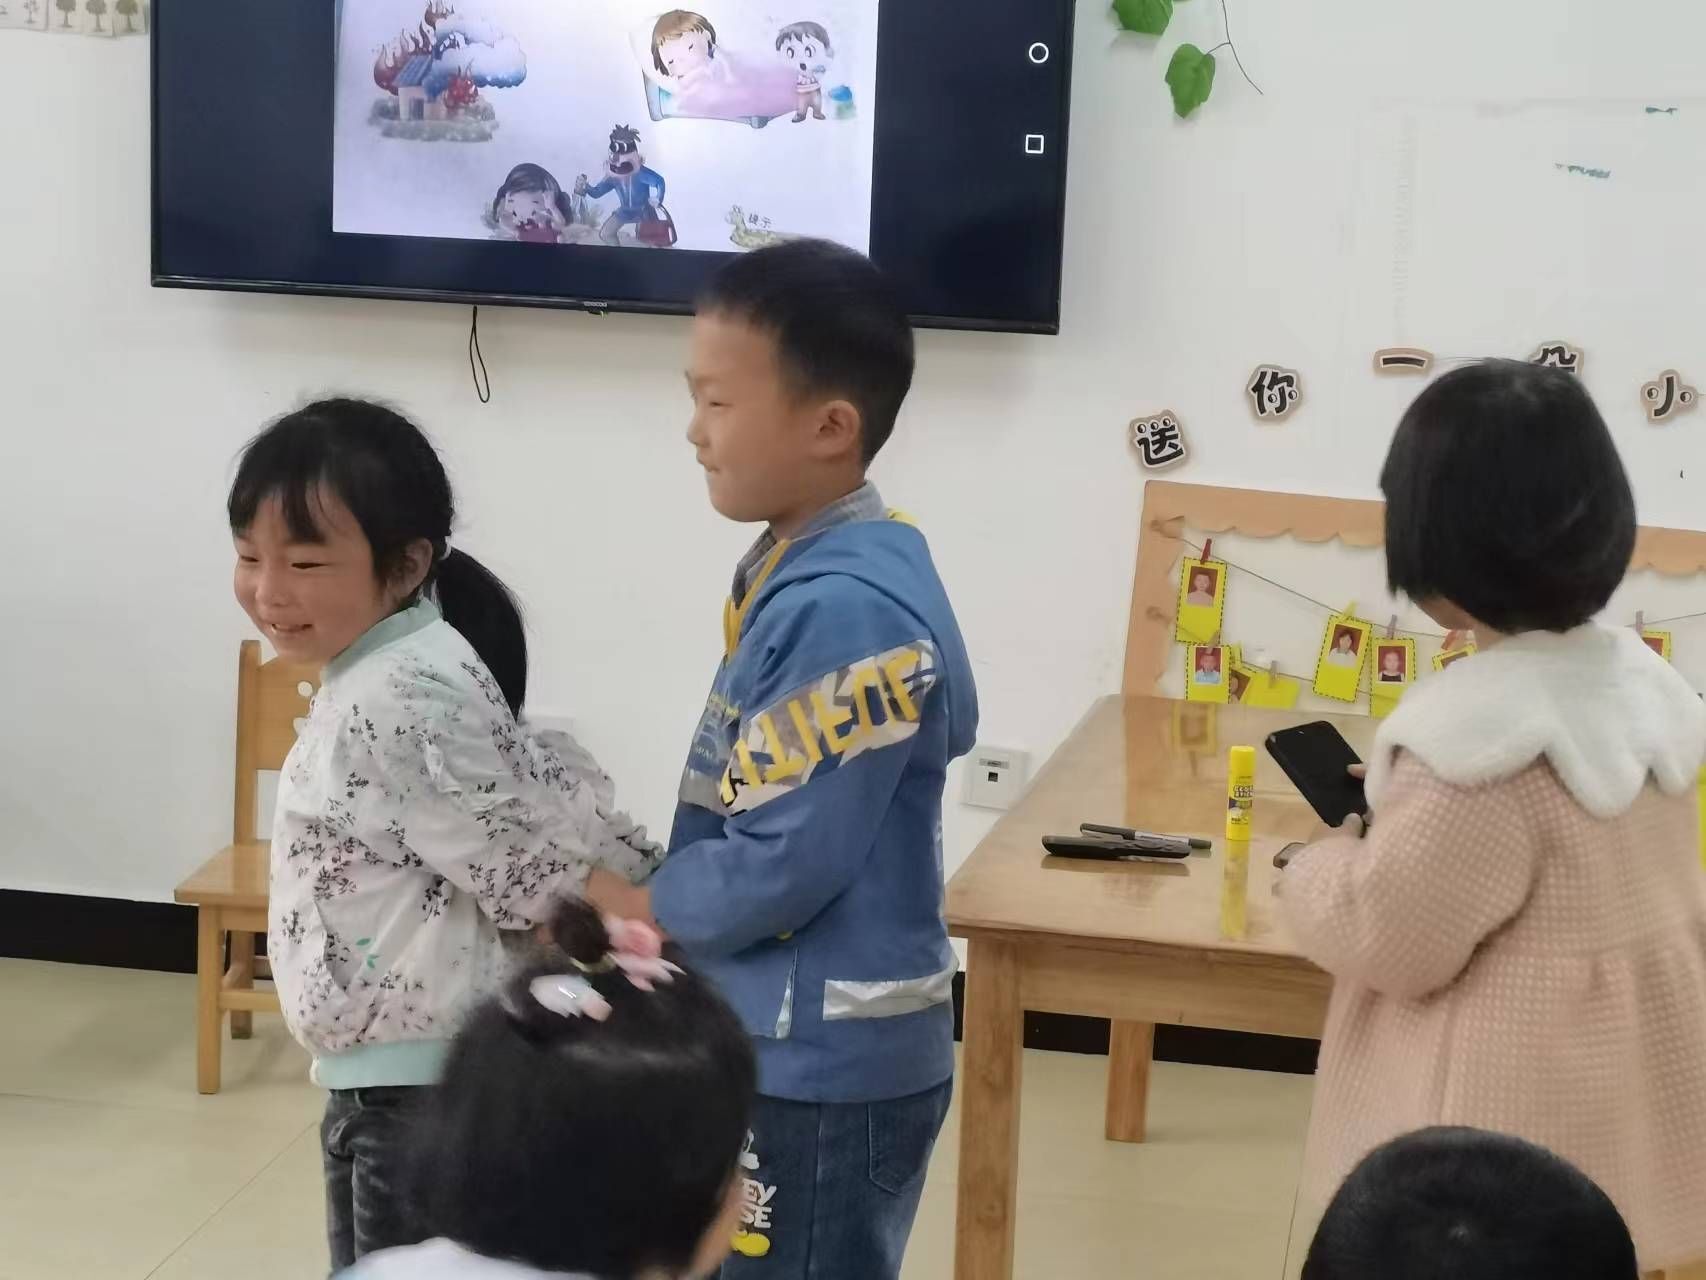 蒲溪镇中心幼儿园“4.15国家安全教育日”主题活动